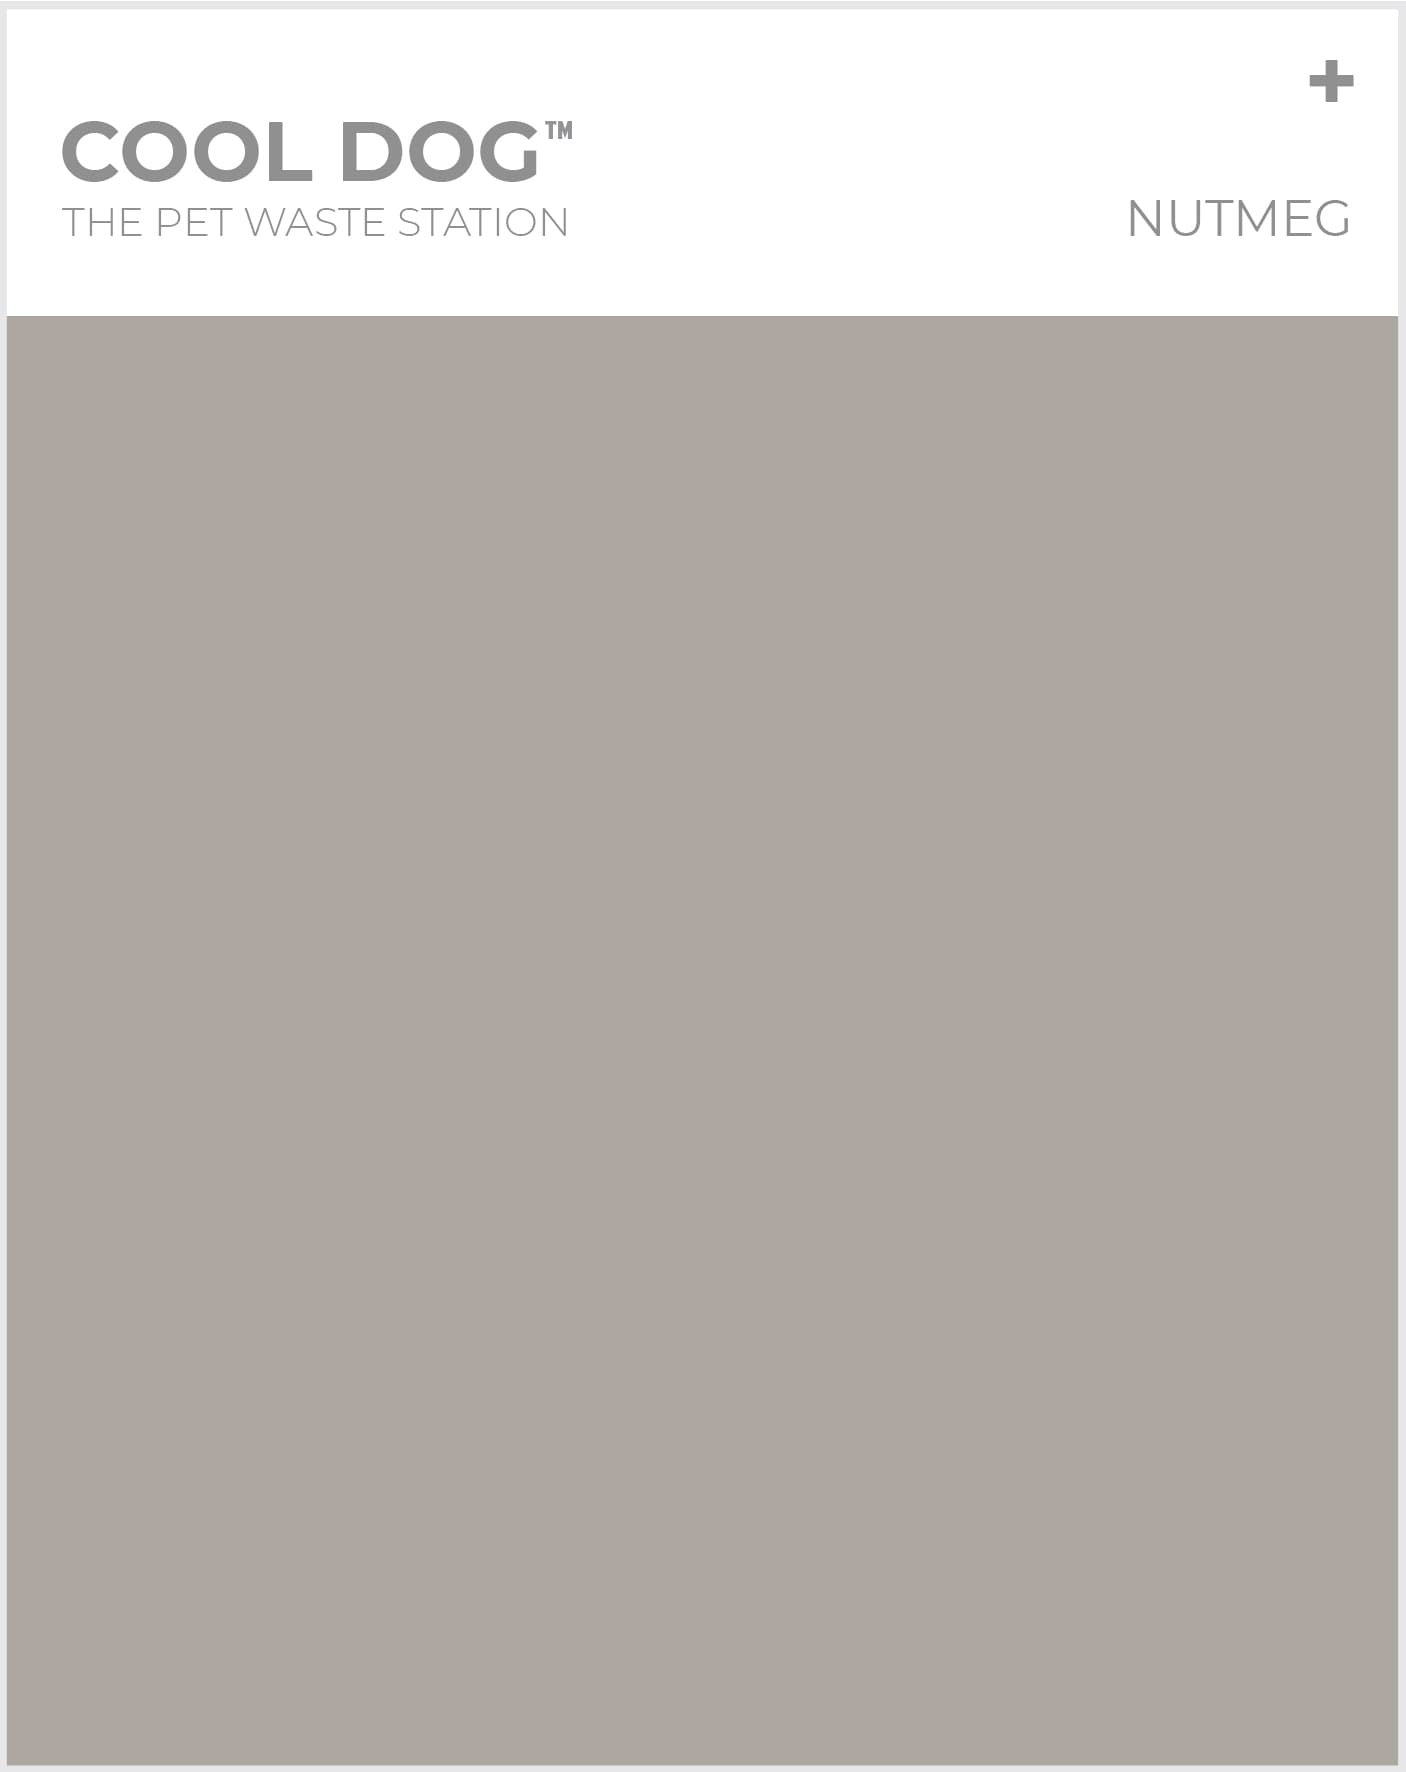 The Pet Waste Station - Nutmeg